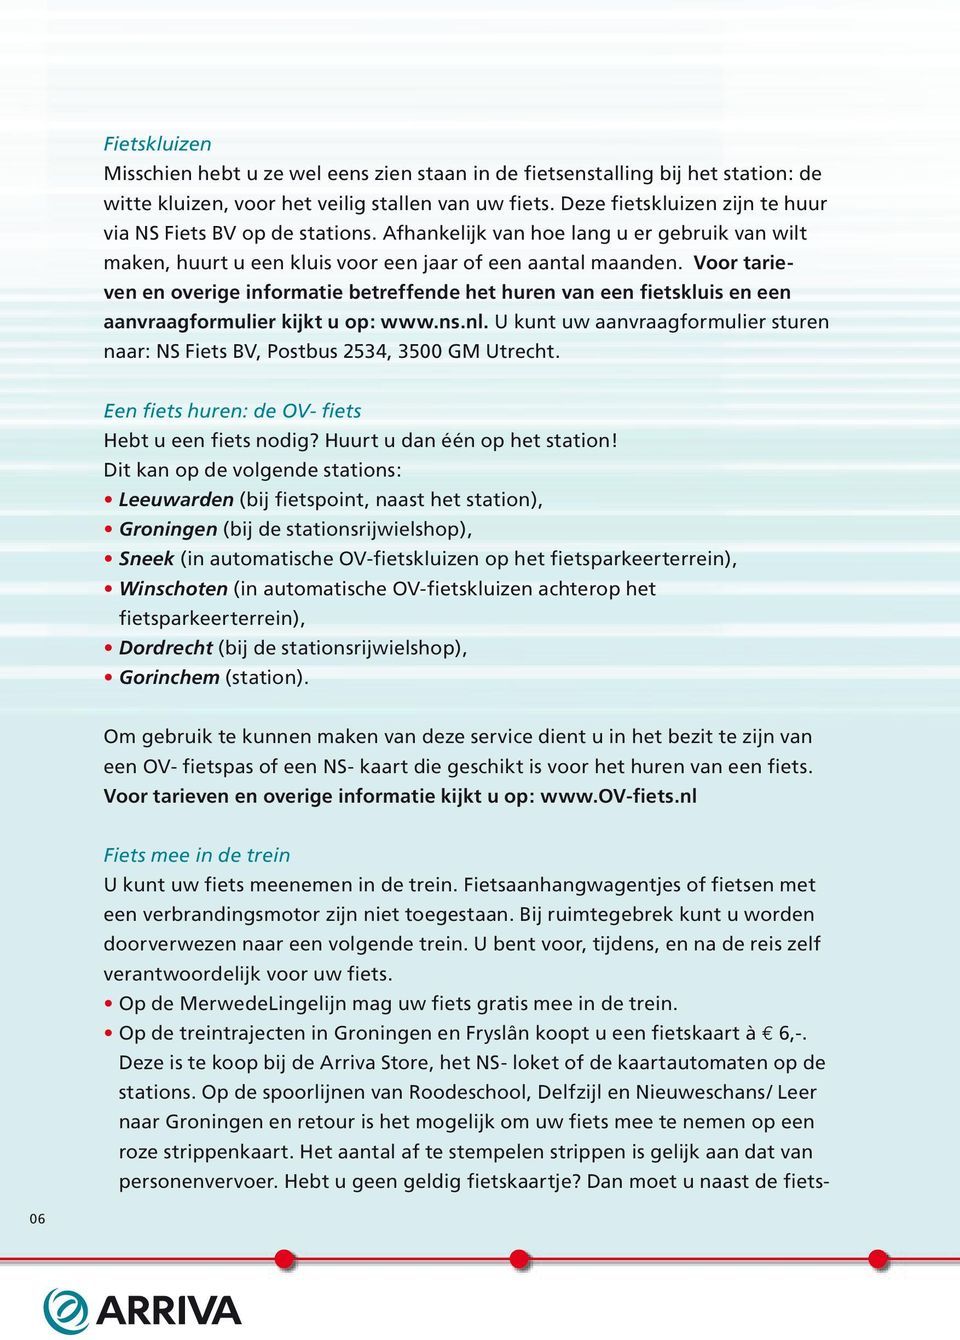 Voor tarieven en overige informatie betreffende het huren van een fietskluis en een aanvraagformulier kijkt u op: www.ns.nl.